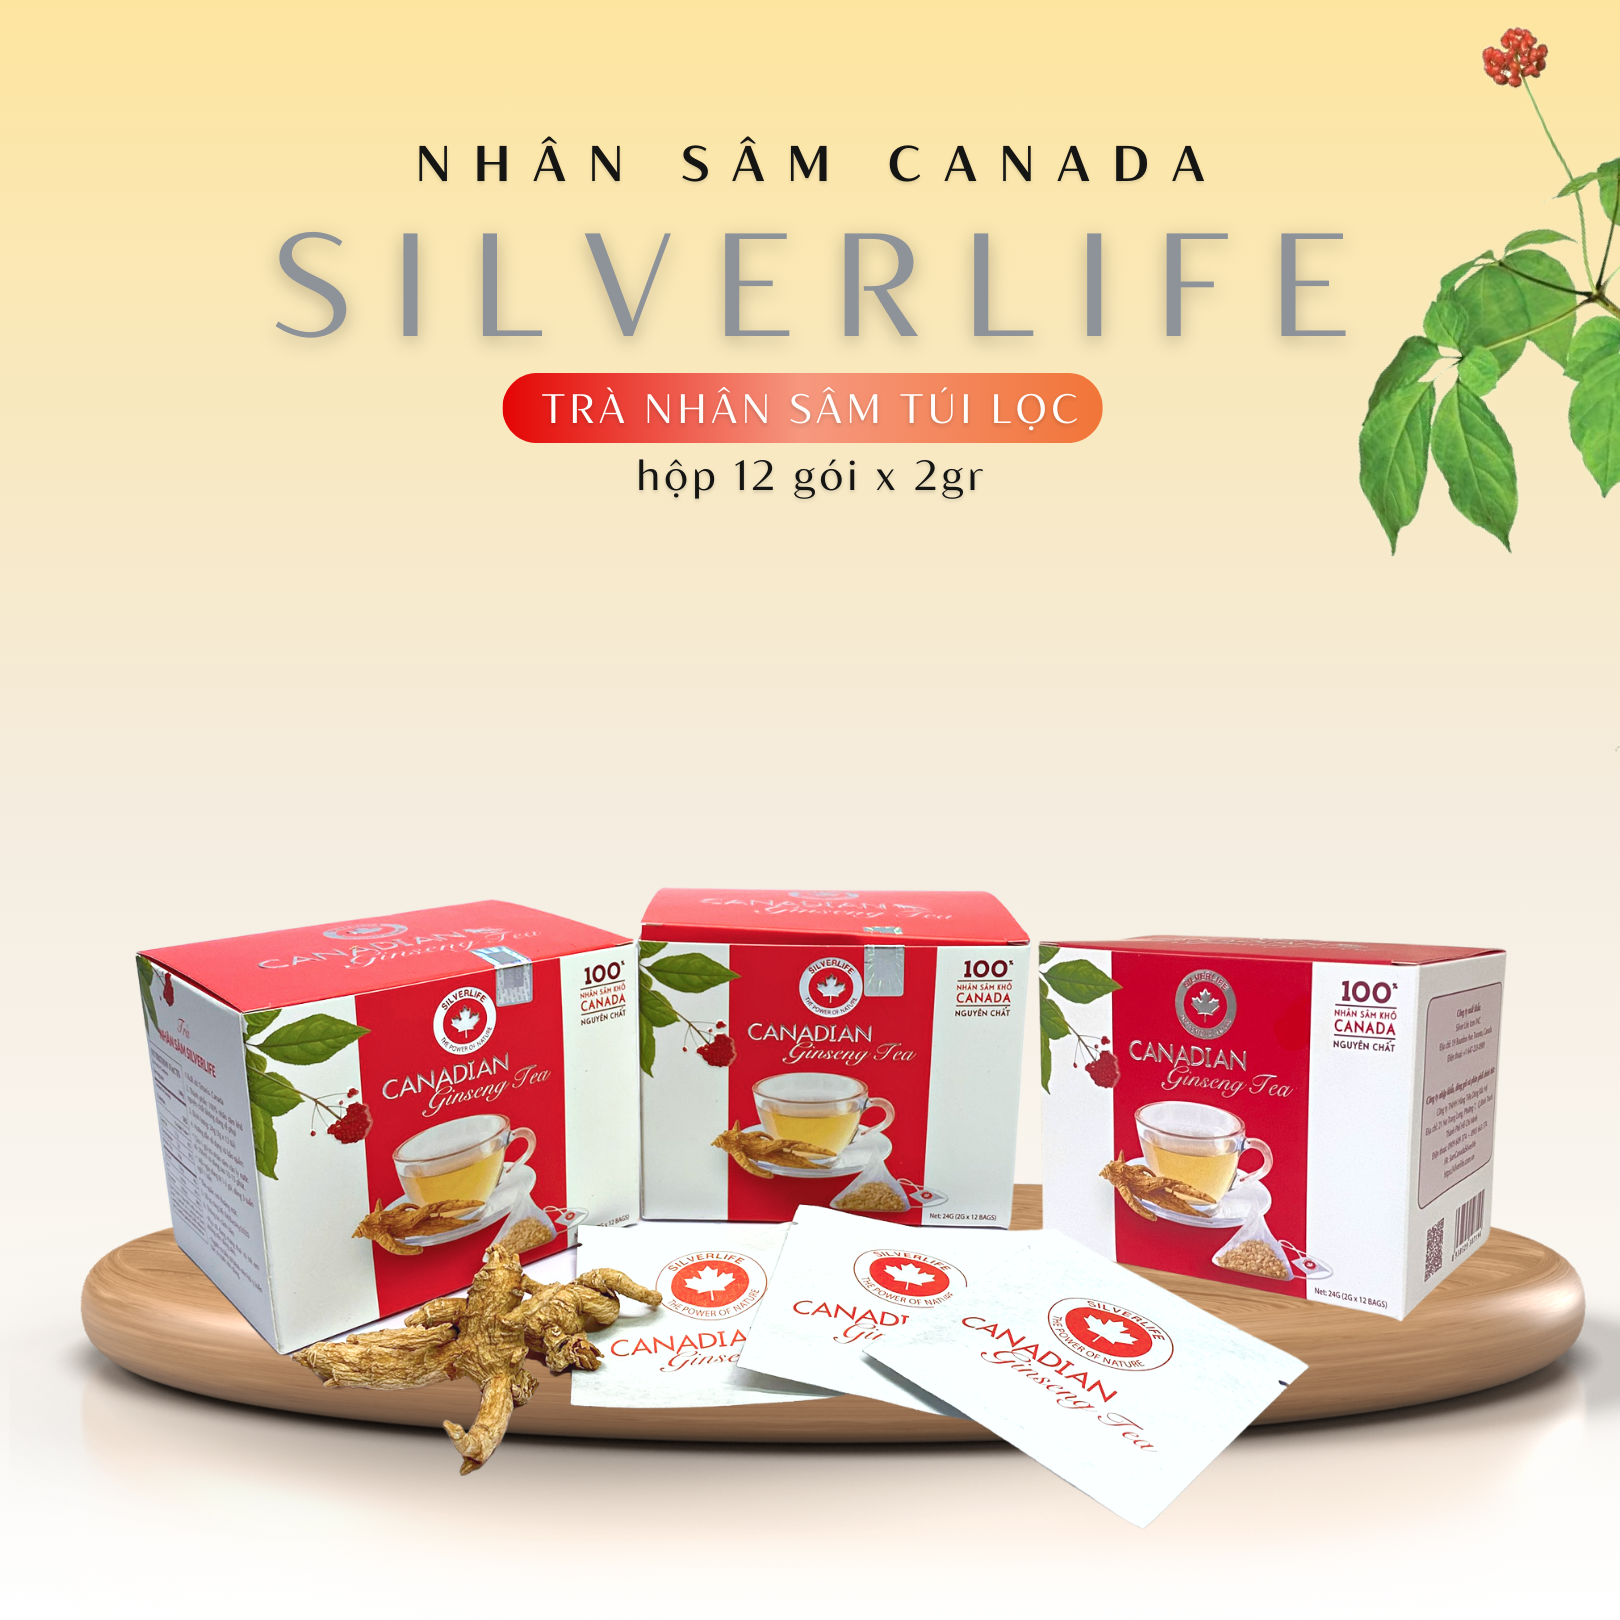 Trà nhân sâm Canada SilverLife hộp 12 gói 24g - 100% nhân sâm Canada tự nhiên nguyên chất - Giúp giải nhiệt, tăng cường sức khoẻ